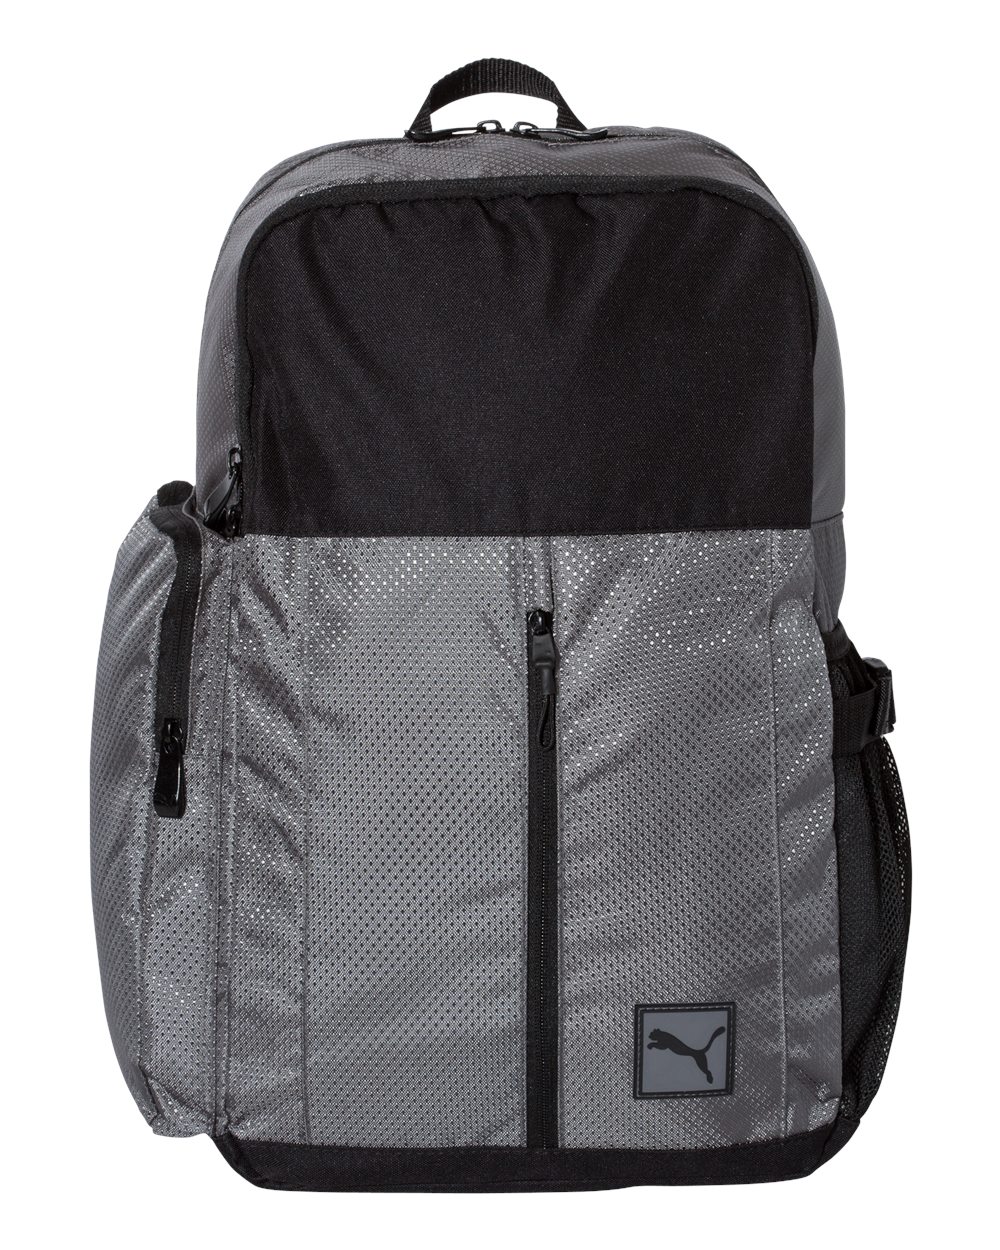 24L Backpack-Puma